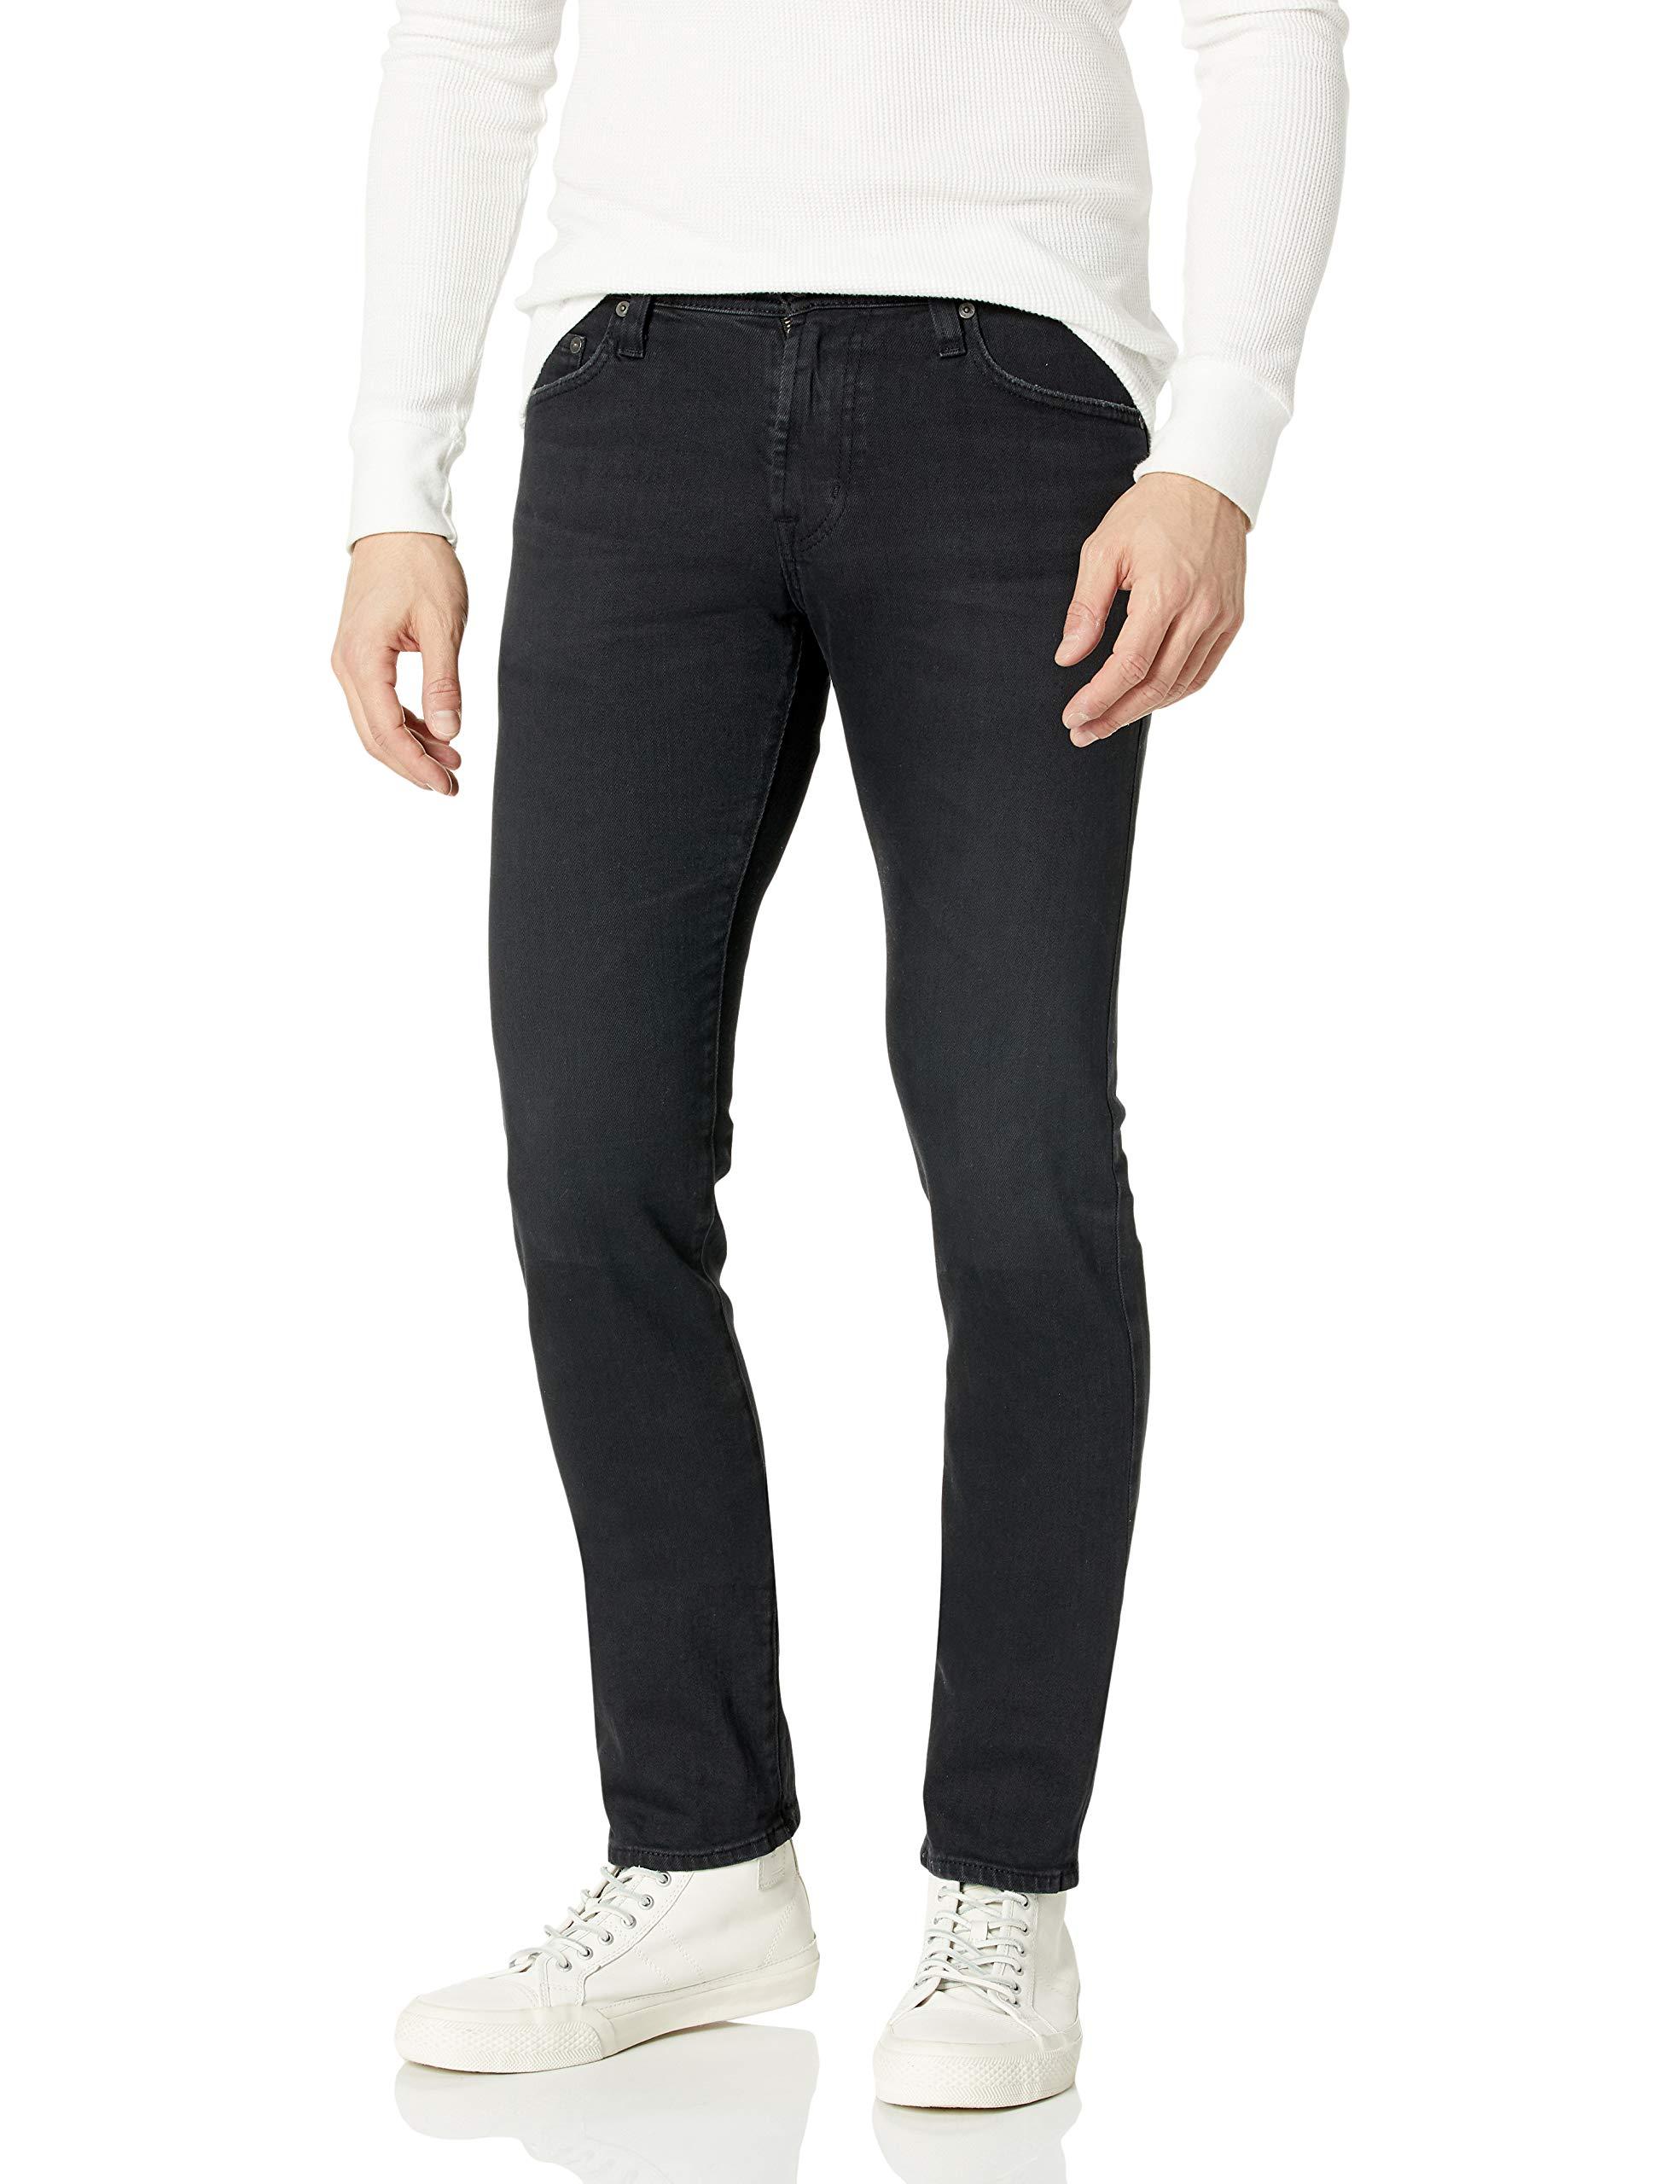 AG Jeans The Tellis Modern Slim Leg Denim Jean in Black for Men - Save ...